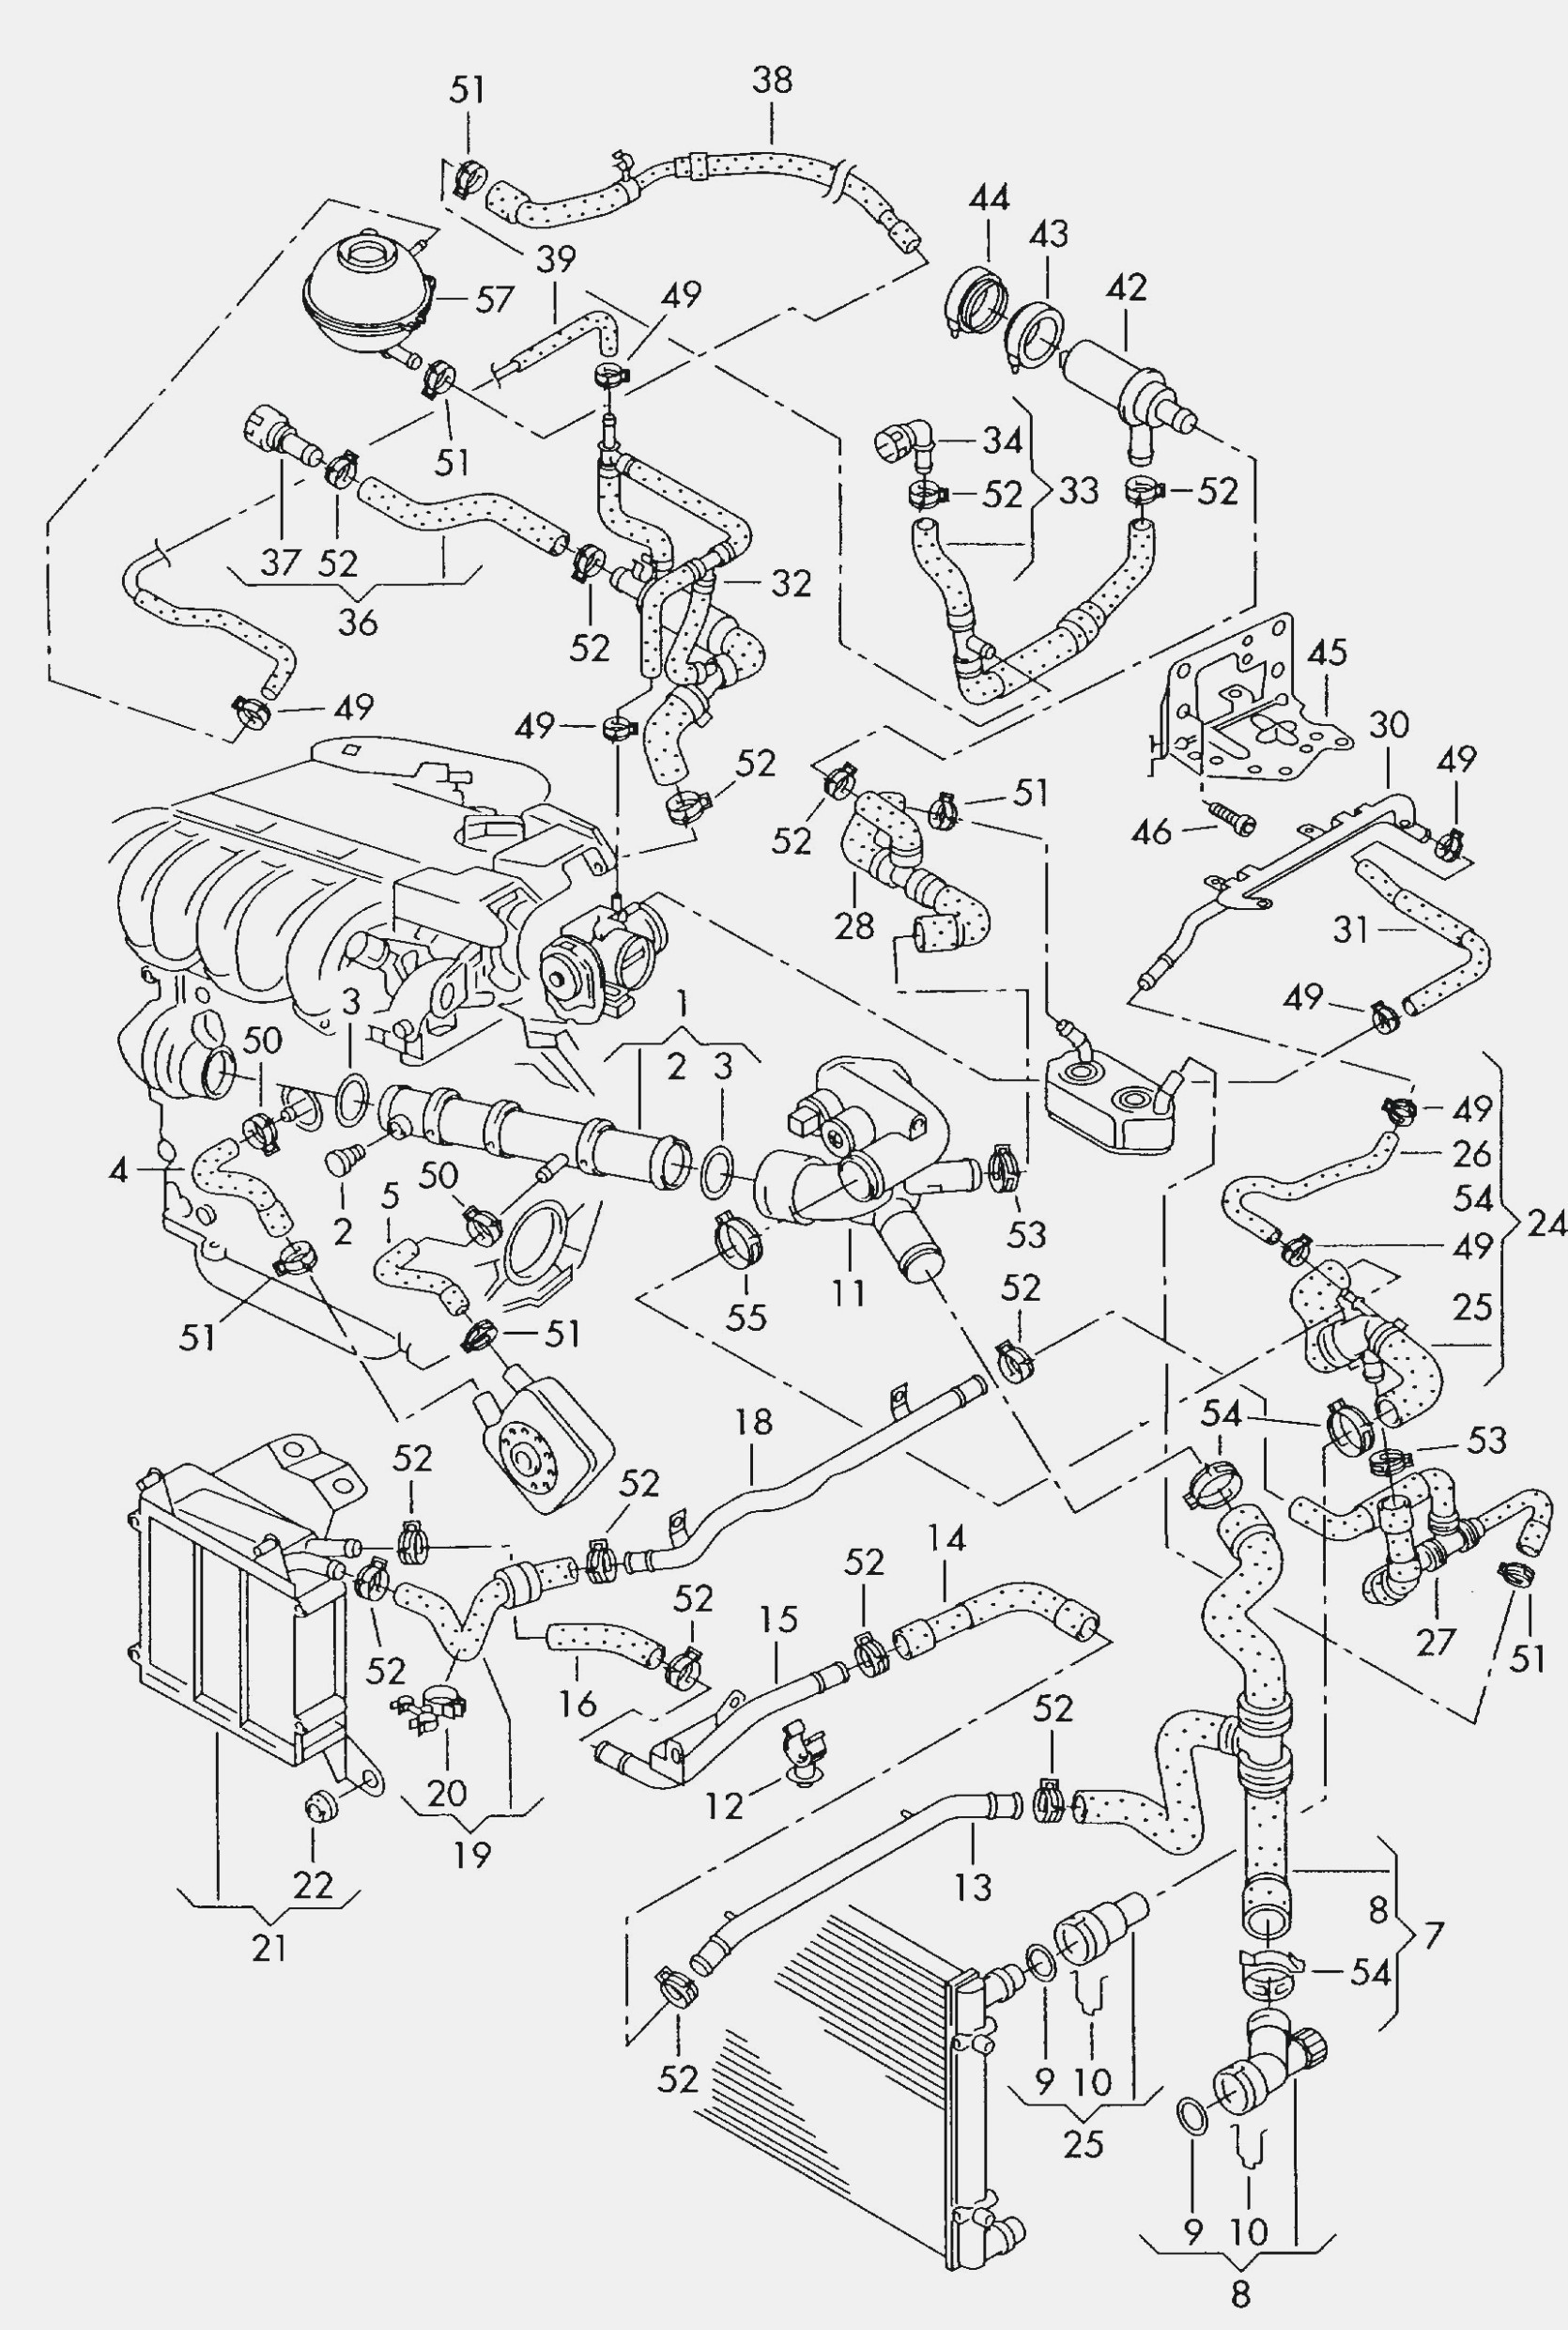 Volkswagen Beetle Engine Diagram Volkswagen Timing Belt and Cover Volkswagen Circuit Diagrams Of Volkswagen Beetle Engine Diagram